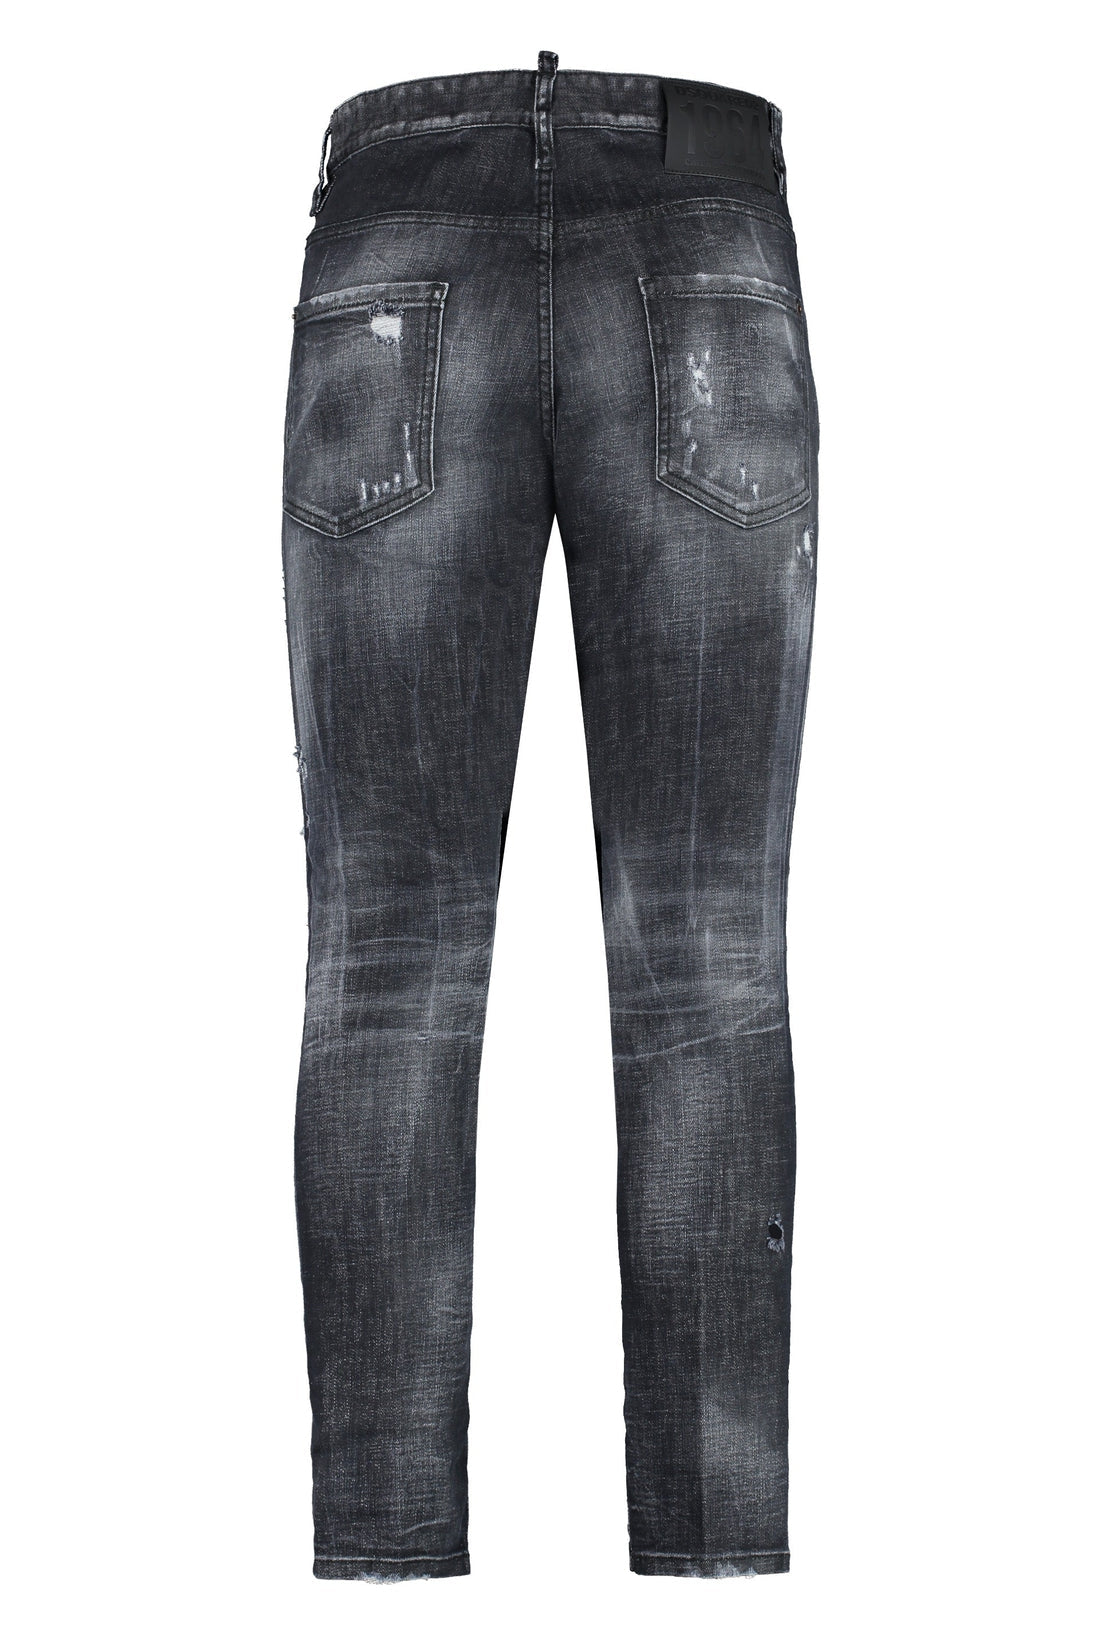 Dsquared2-OUTLET-SALE-5-pocket skinny jeans-ARCHIVIST